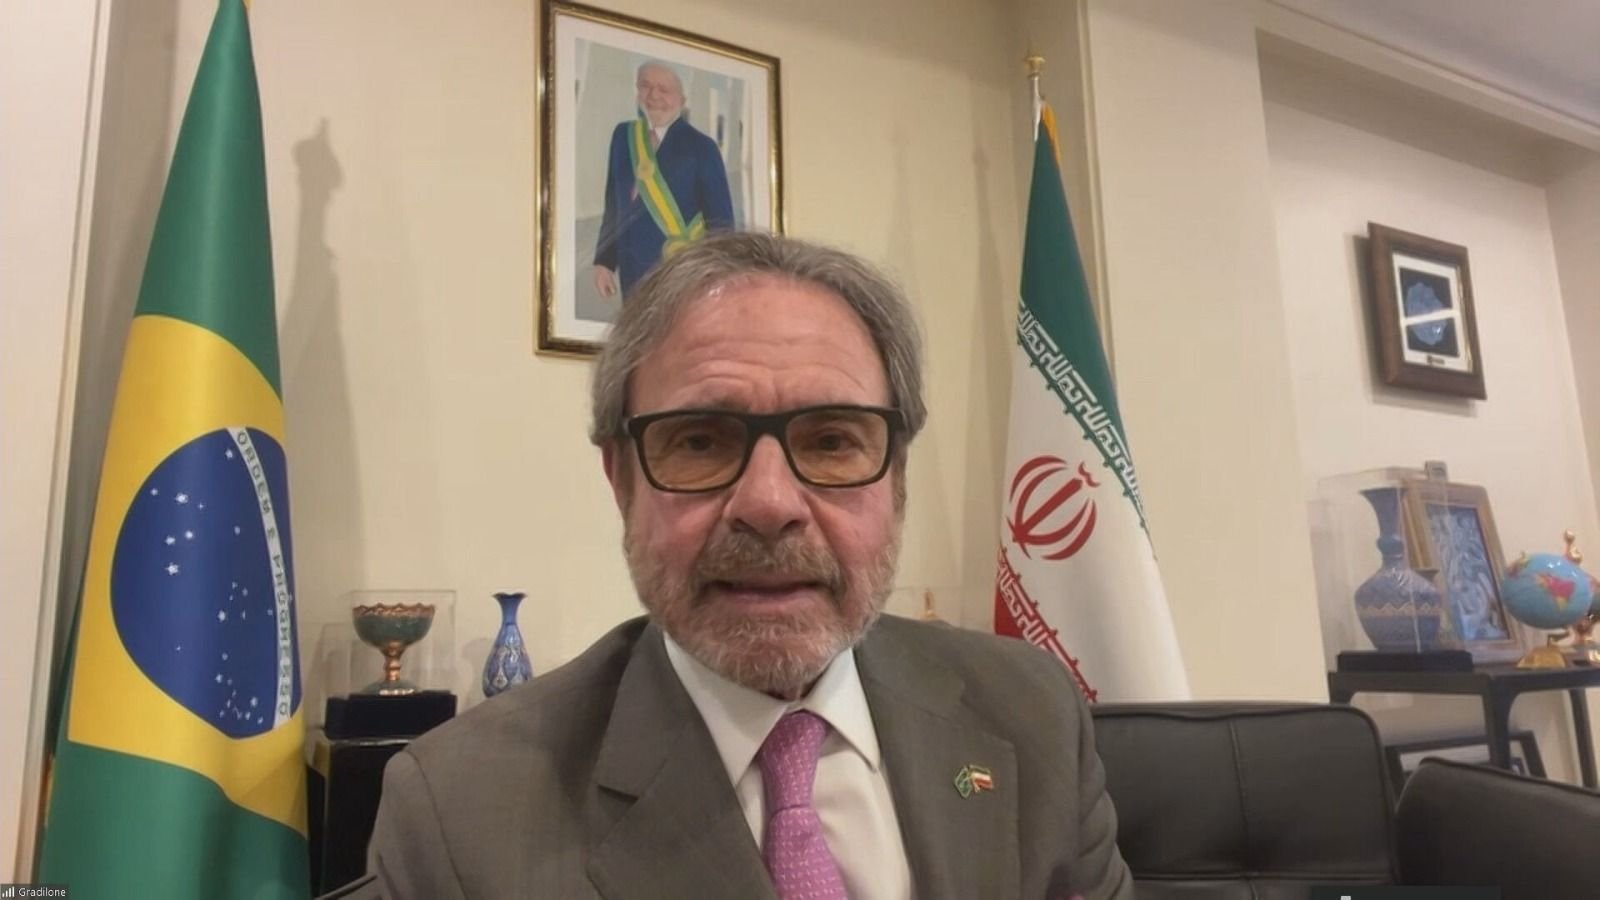 Ataque foi “limitado“ e para “mostrar direito de autodefesa“, diz embaixador do Brasil no Irã à CNN